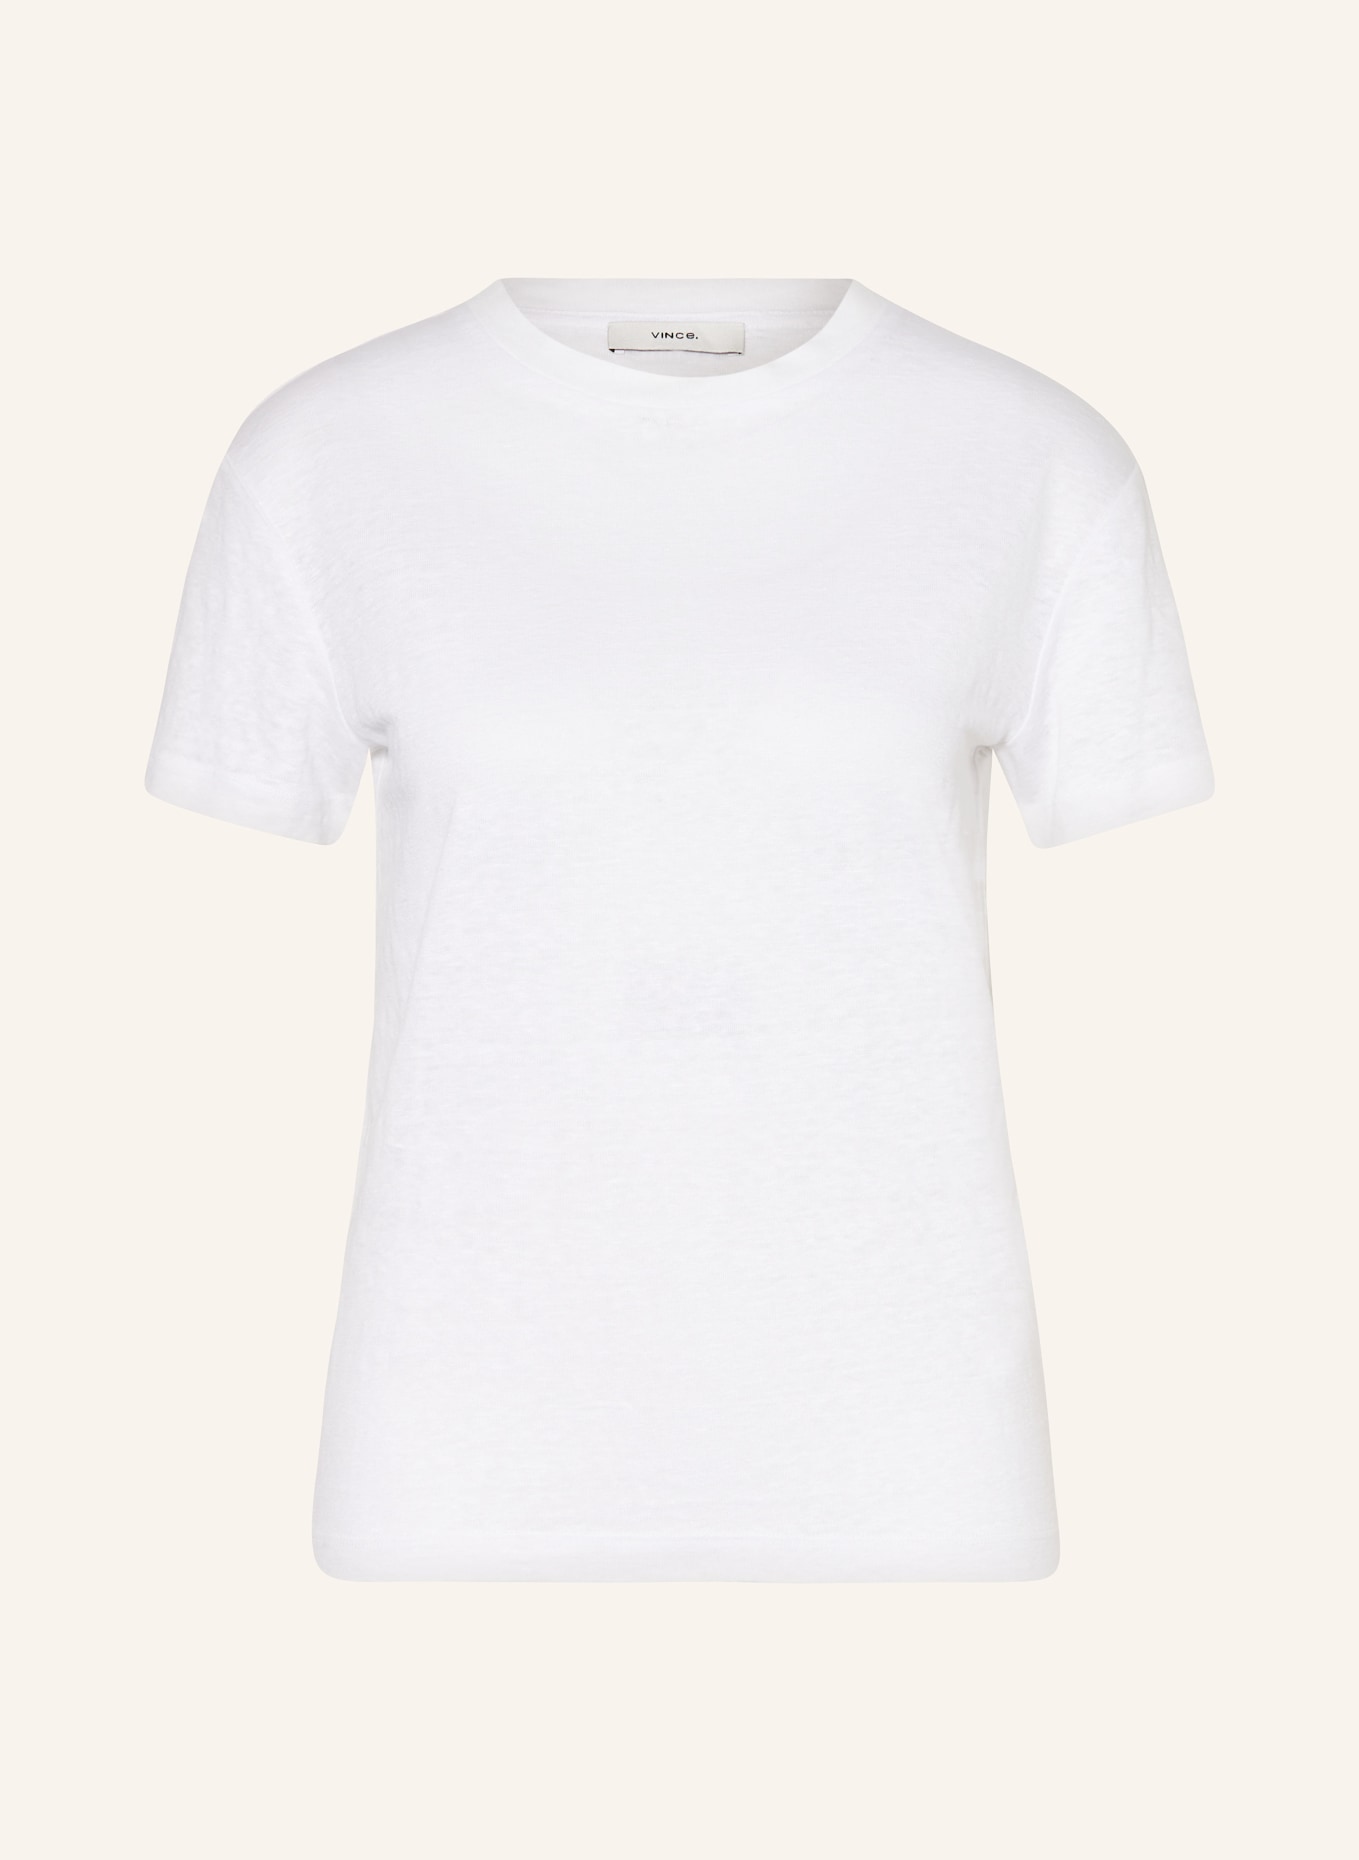 VINCE T-shirt, Color: 137OWT optical white (Image 1)